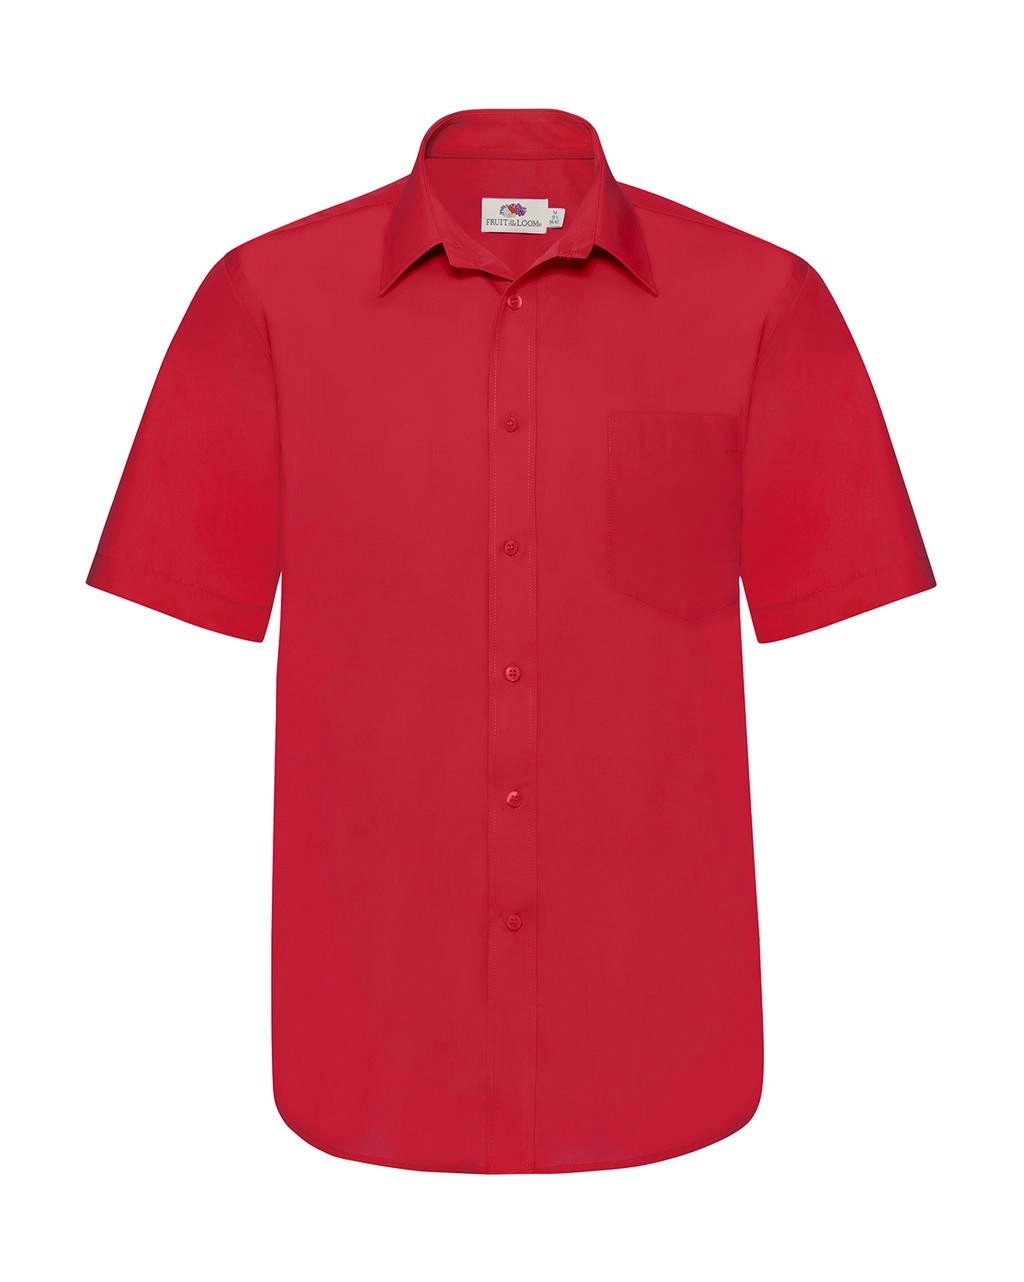 Poplin Shirt zum Besticken und Bedrucken in der Farbe Red mit Ihren Logo, Schriftzug oder Motiv.